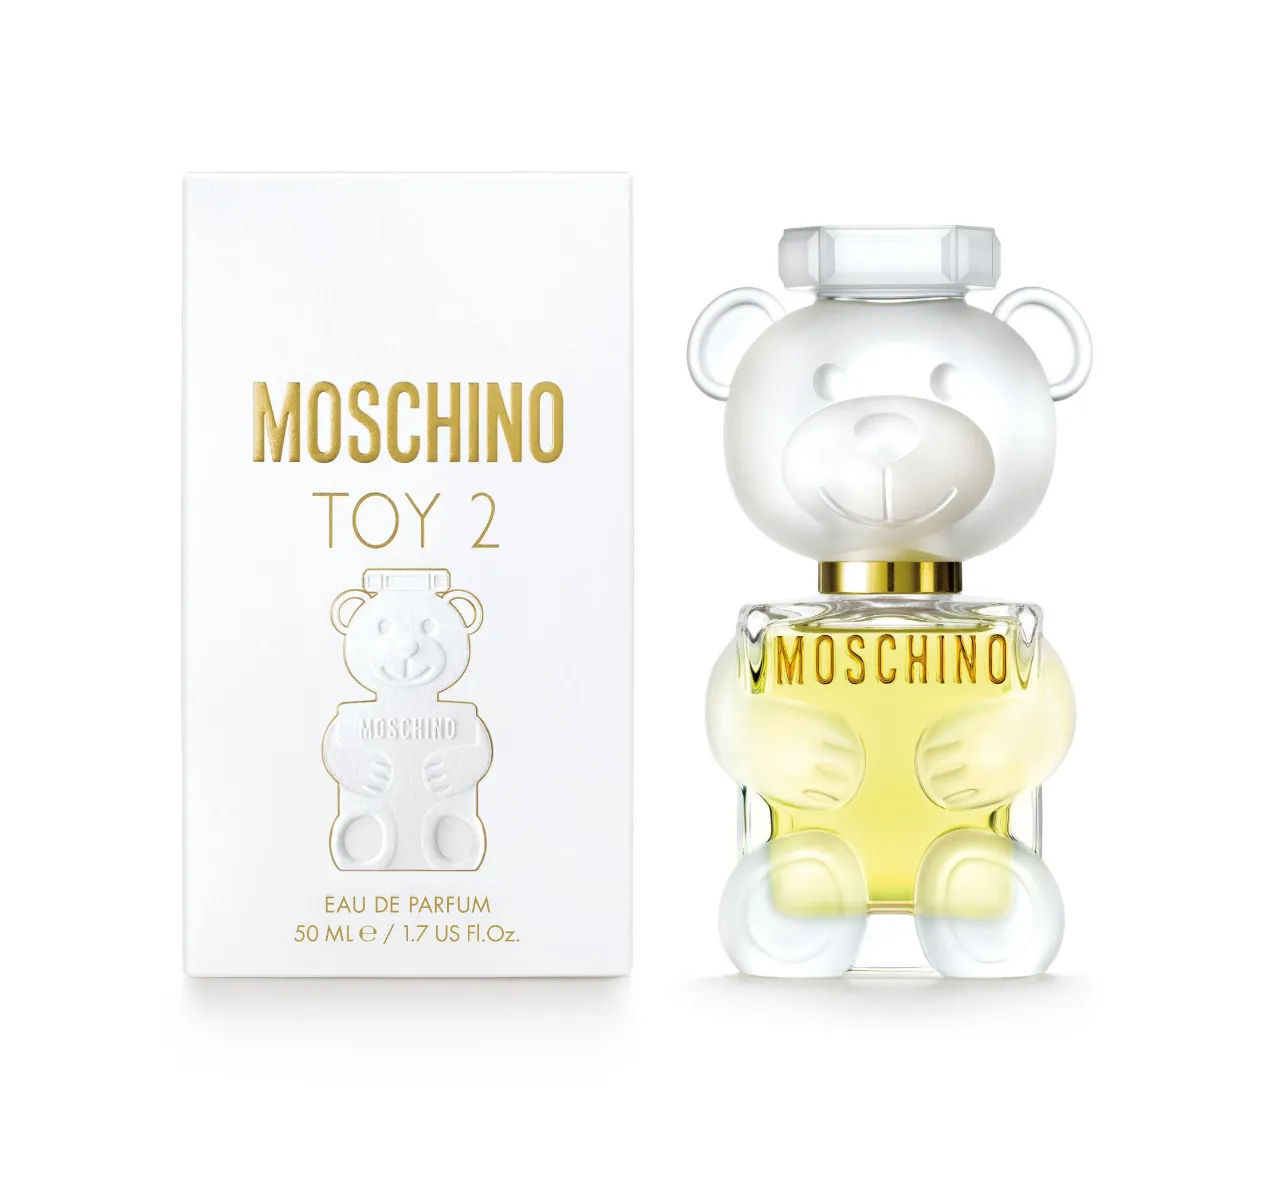 MOSCHINO Toy2 parfémovaná voda pro ženy 50 ml